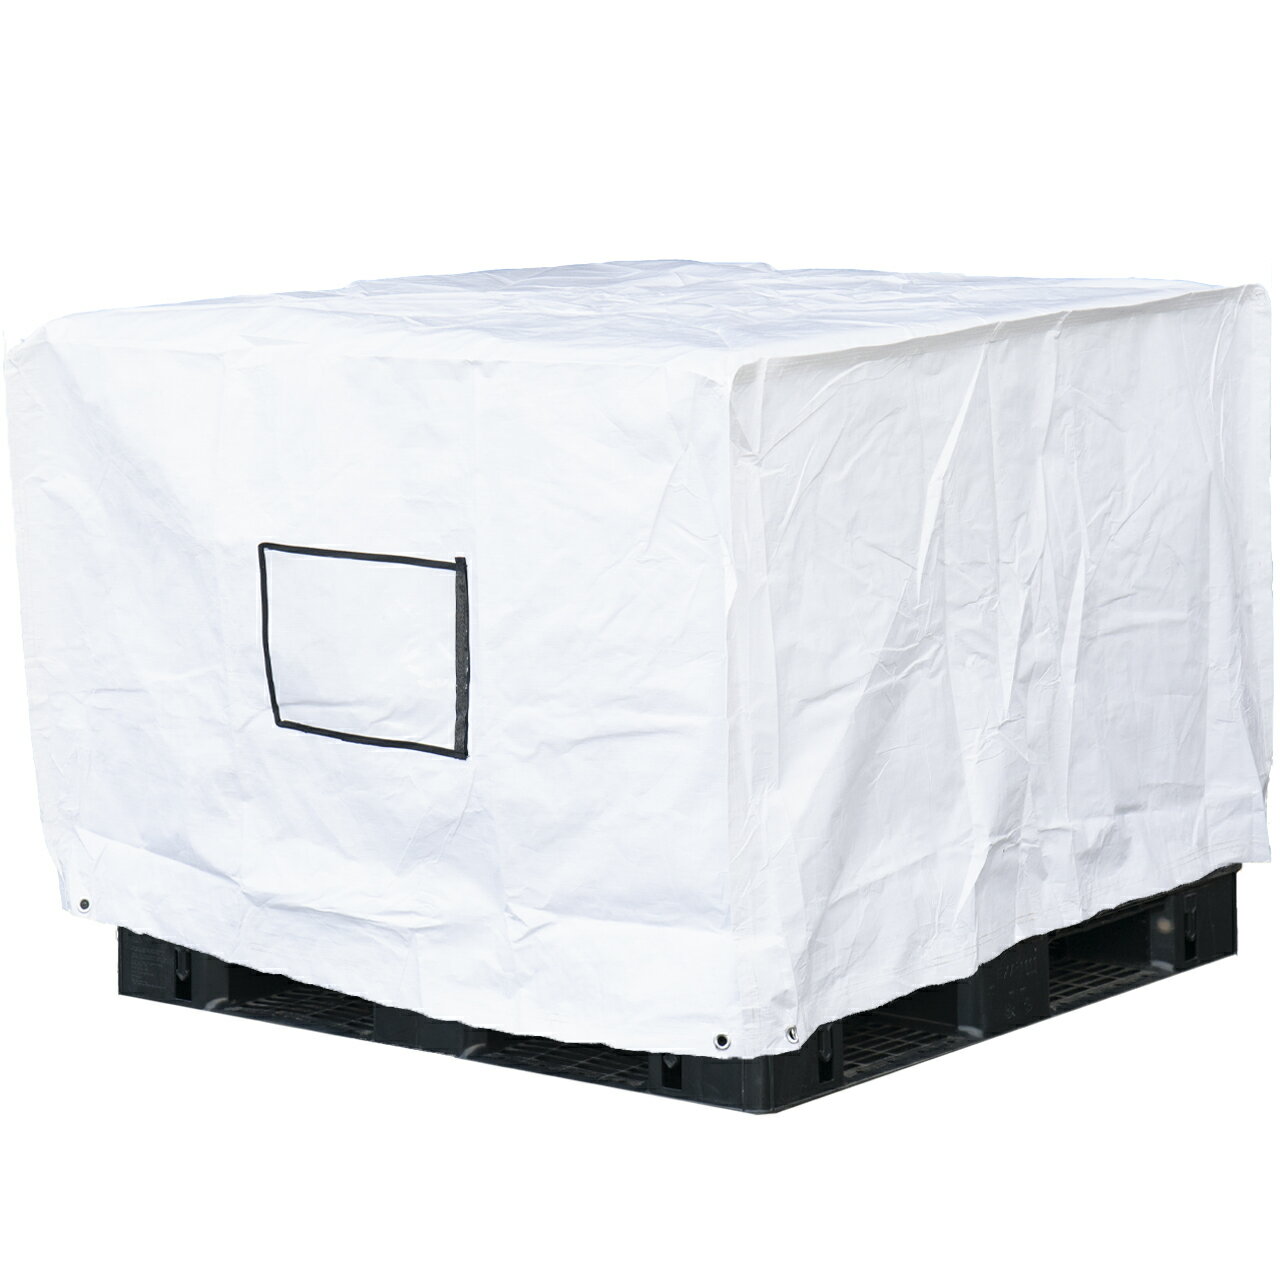 フージンパレットカバー 1.2m 1.2m H1.0m 高耐候性UVパレットカバー PE 防水 防塵 UVカット 国内パレット 屋内外用 既成サイズ 1.1m 1.1mパレット用